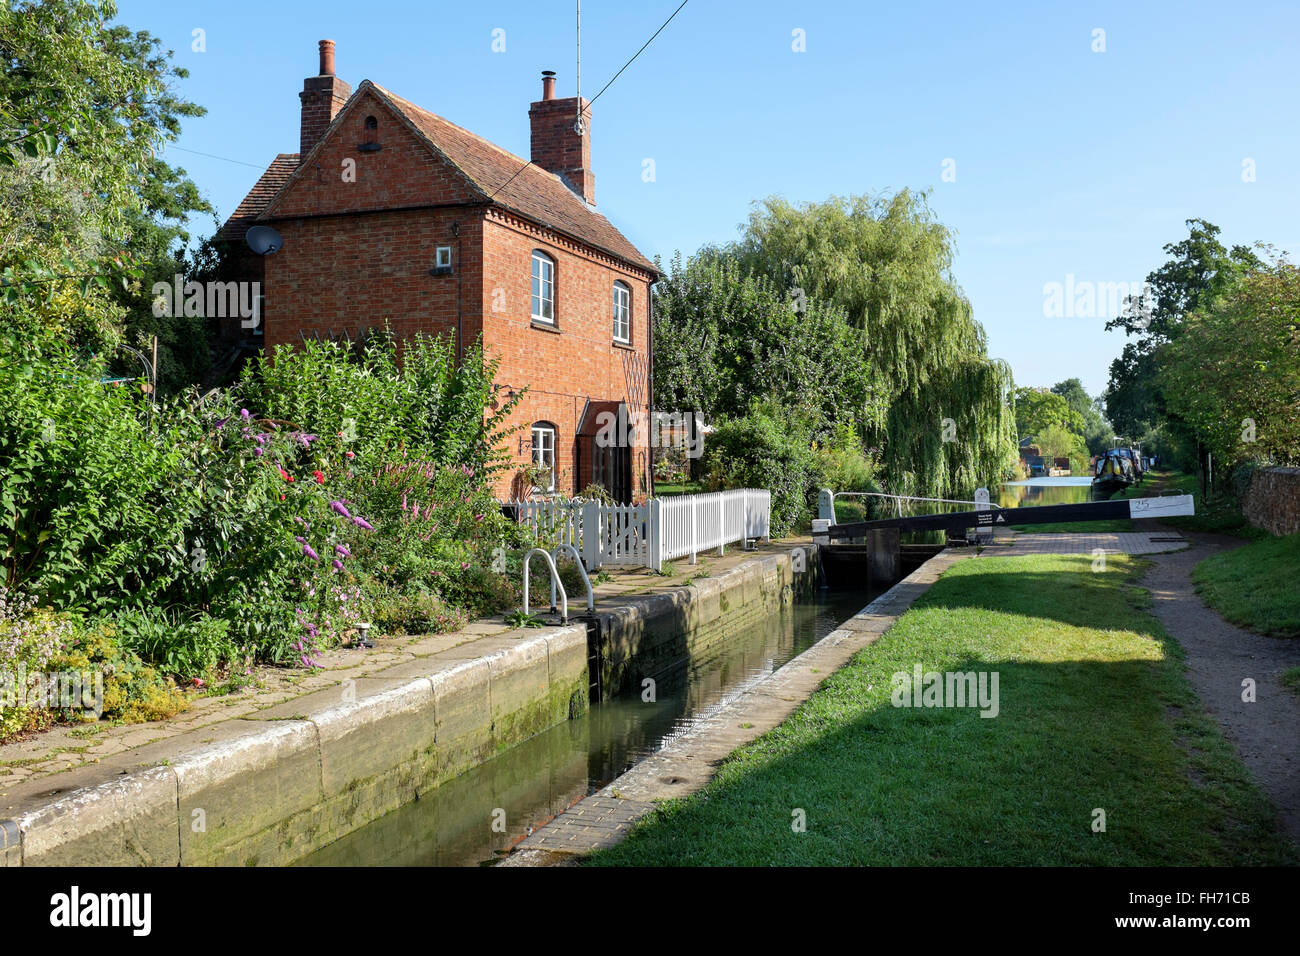 Bloqueo Cropredy nº 25, canal de Oxford, Oxford, Inglaterra Foto de stock